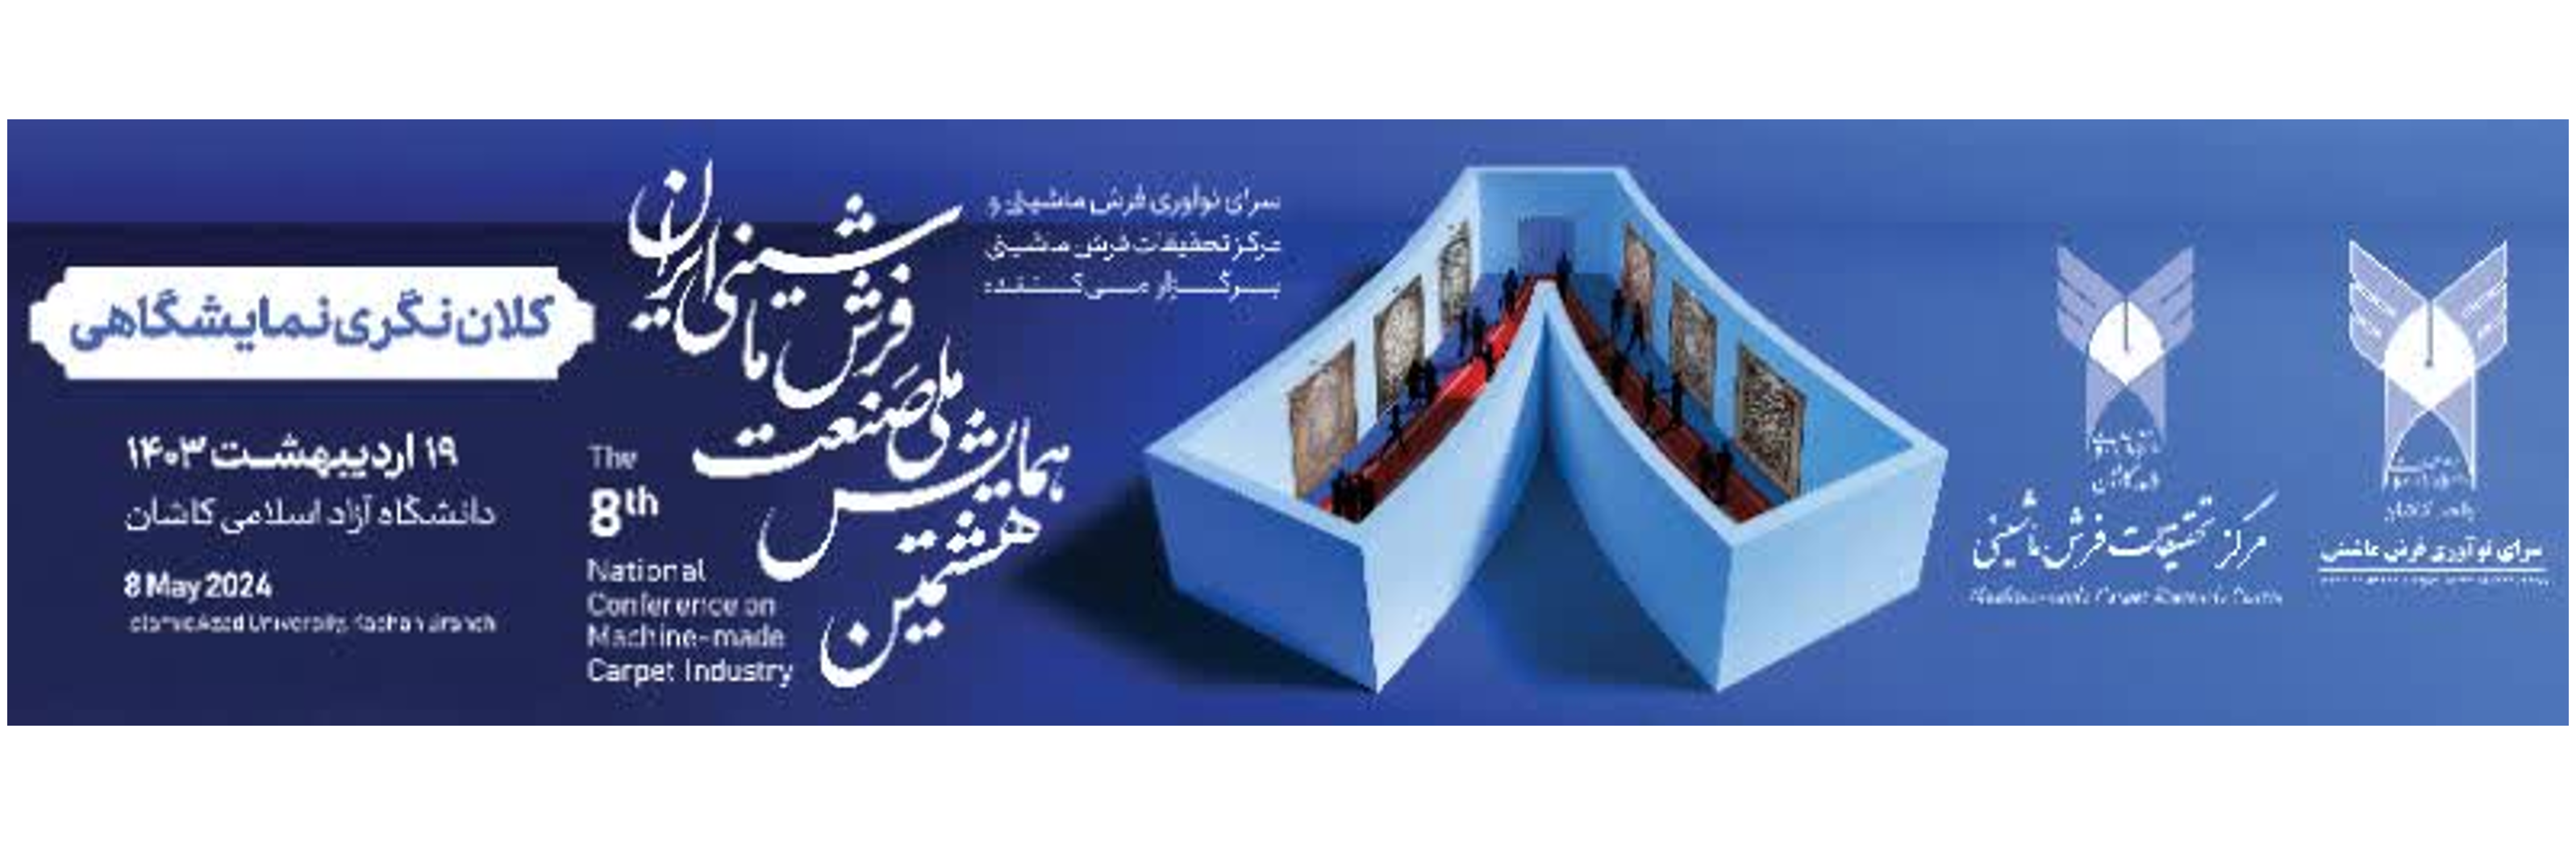 هشتمین همایش ملی صنعت فرش ماشینی ایران